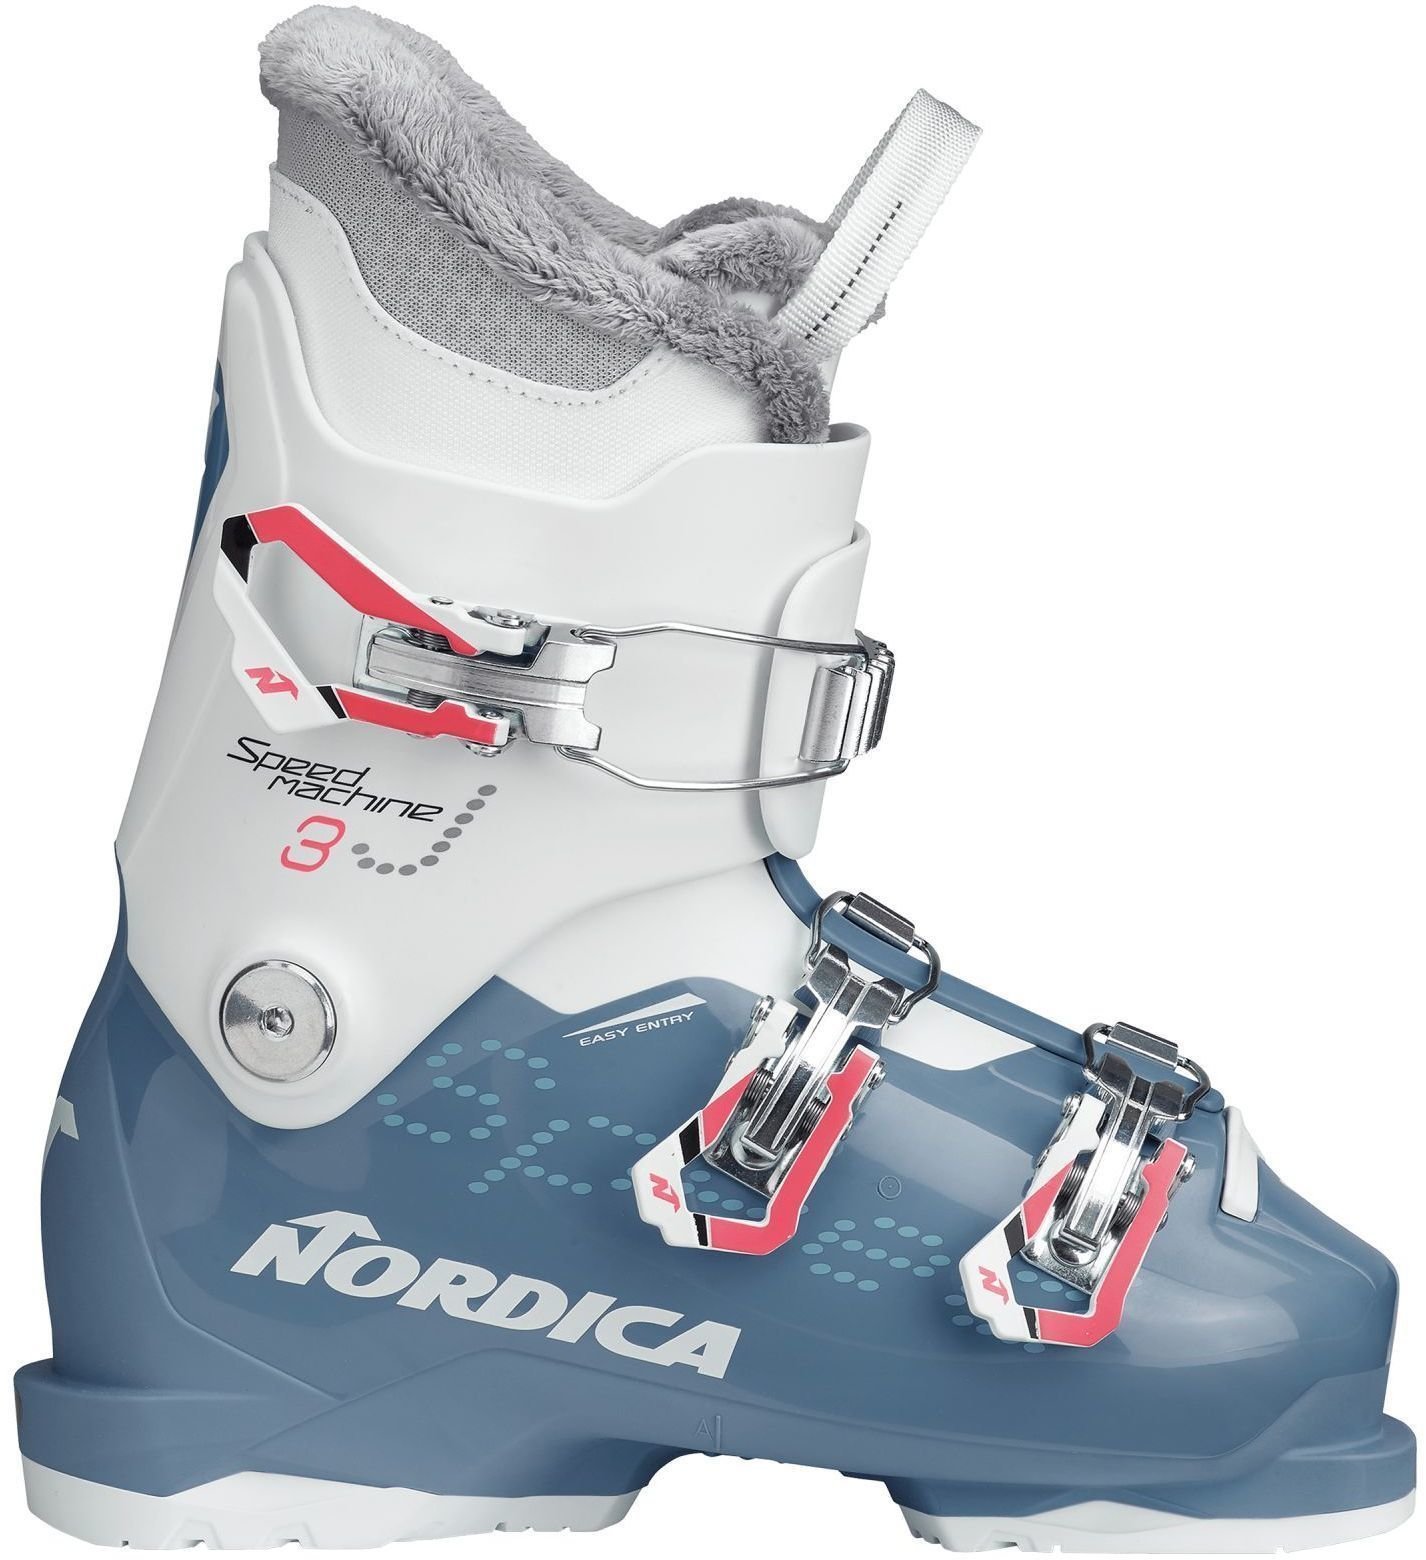 Alpin-Skischuhe Nordica Speedmachine J3 Light Blue/White 250 Alpin-Skischuhe